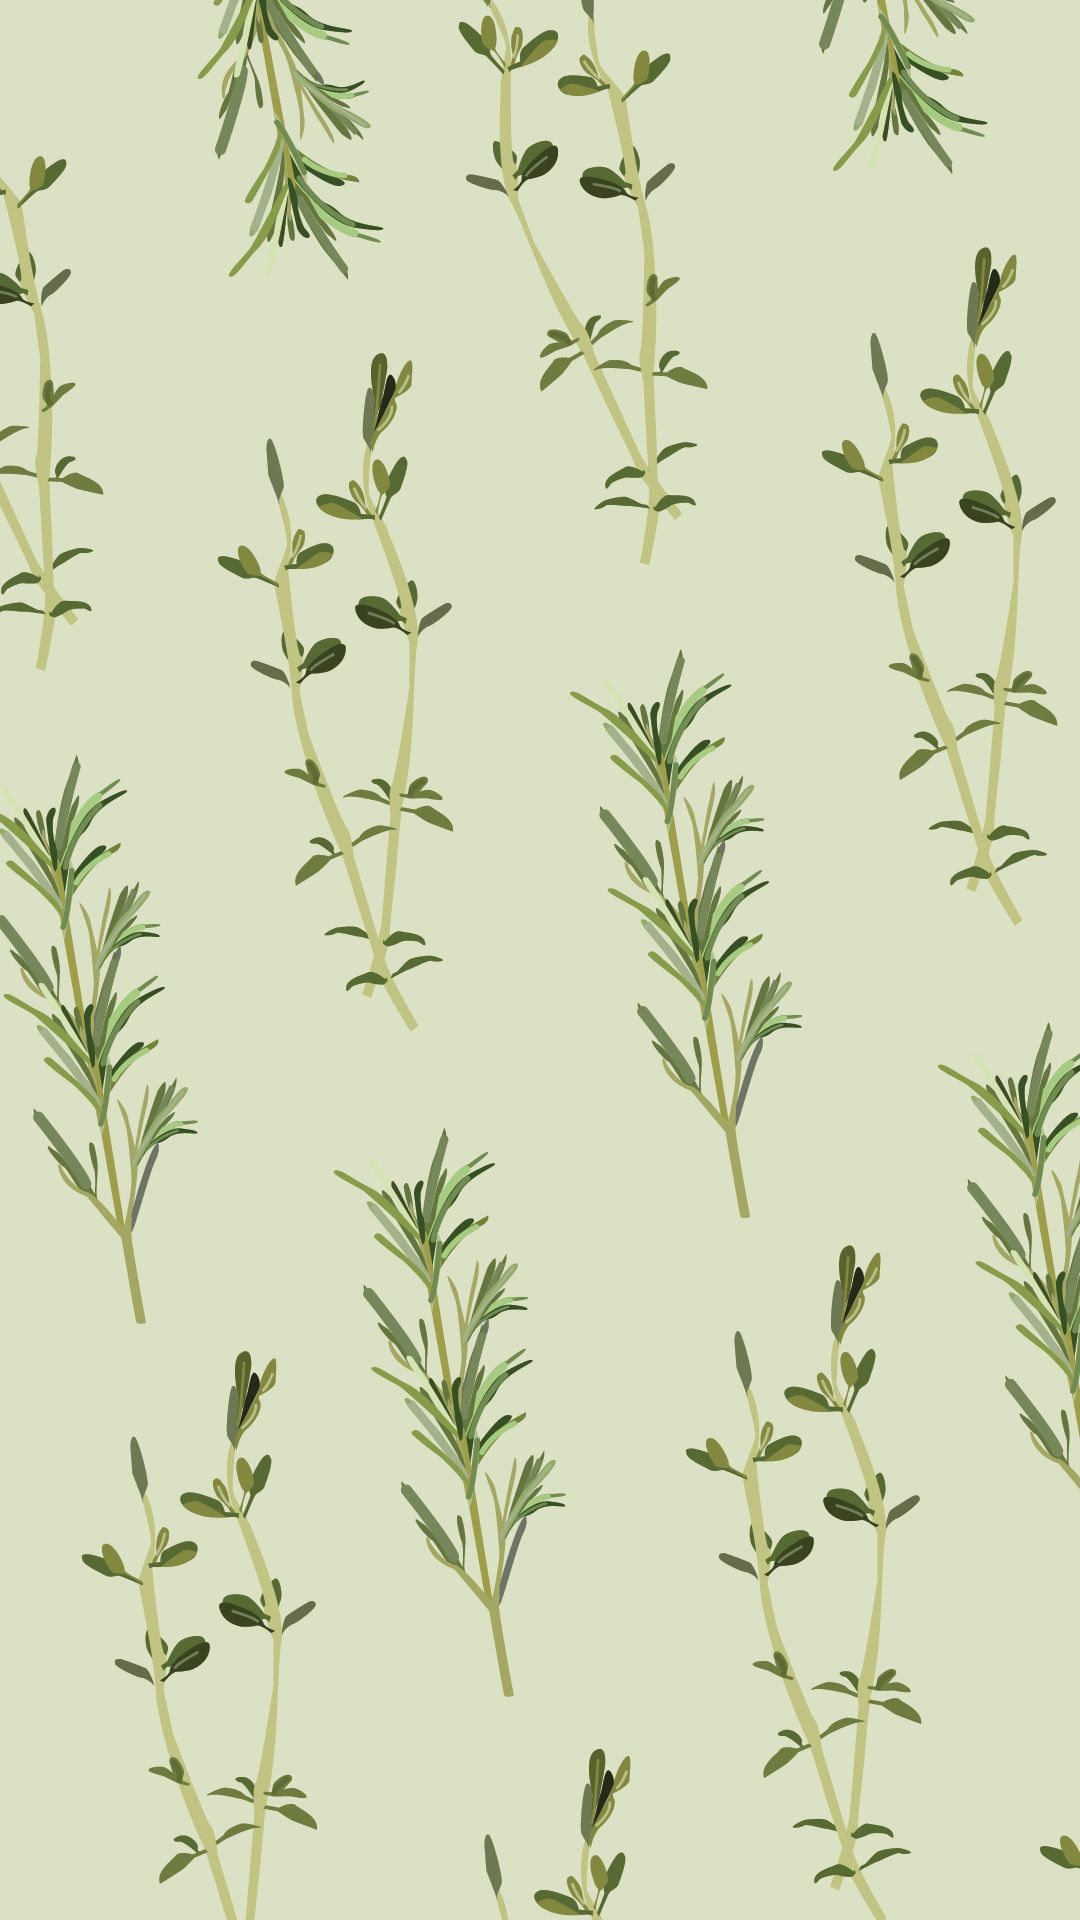 Herbs Wallpaper. Medicinal Herbs Wallpaper, Herbs Wallpaper and Fresh Herbs Background